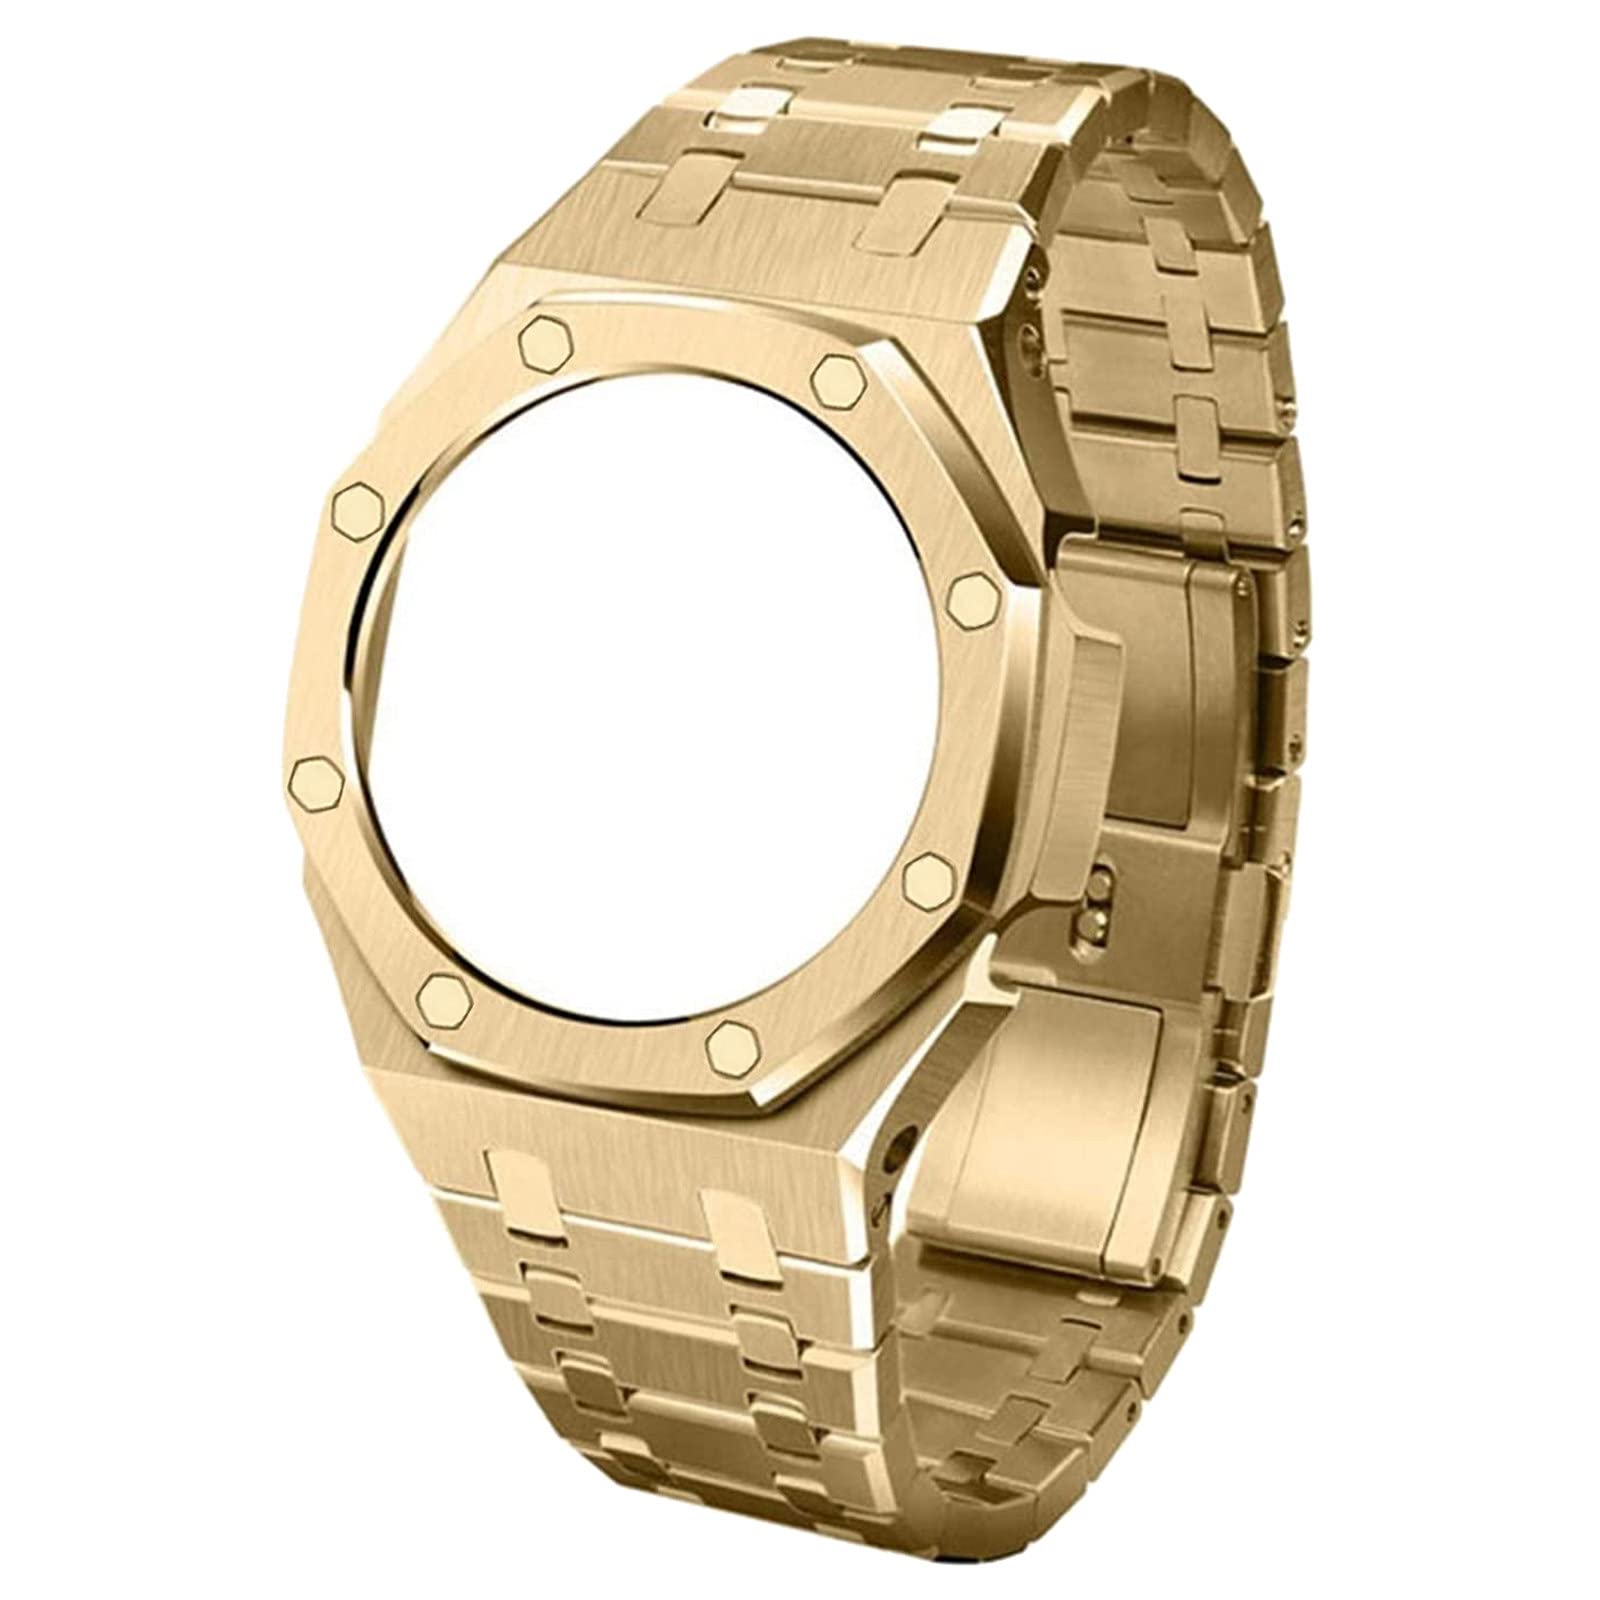 Aunye Edelstahl Armband Lünette Gehäuse Kompatibel mit Shock GA-2100/GA-2110 Uhren Band - Verstellbares Ersatzband - Metall Band Strap Kompatibel mit Casio Watch (Gold)